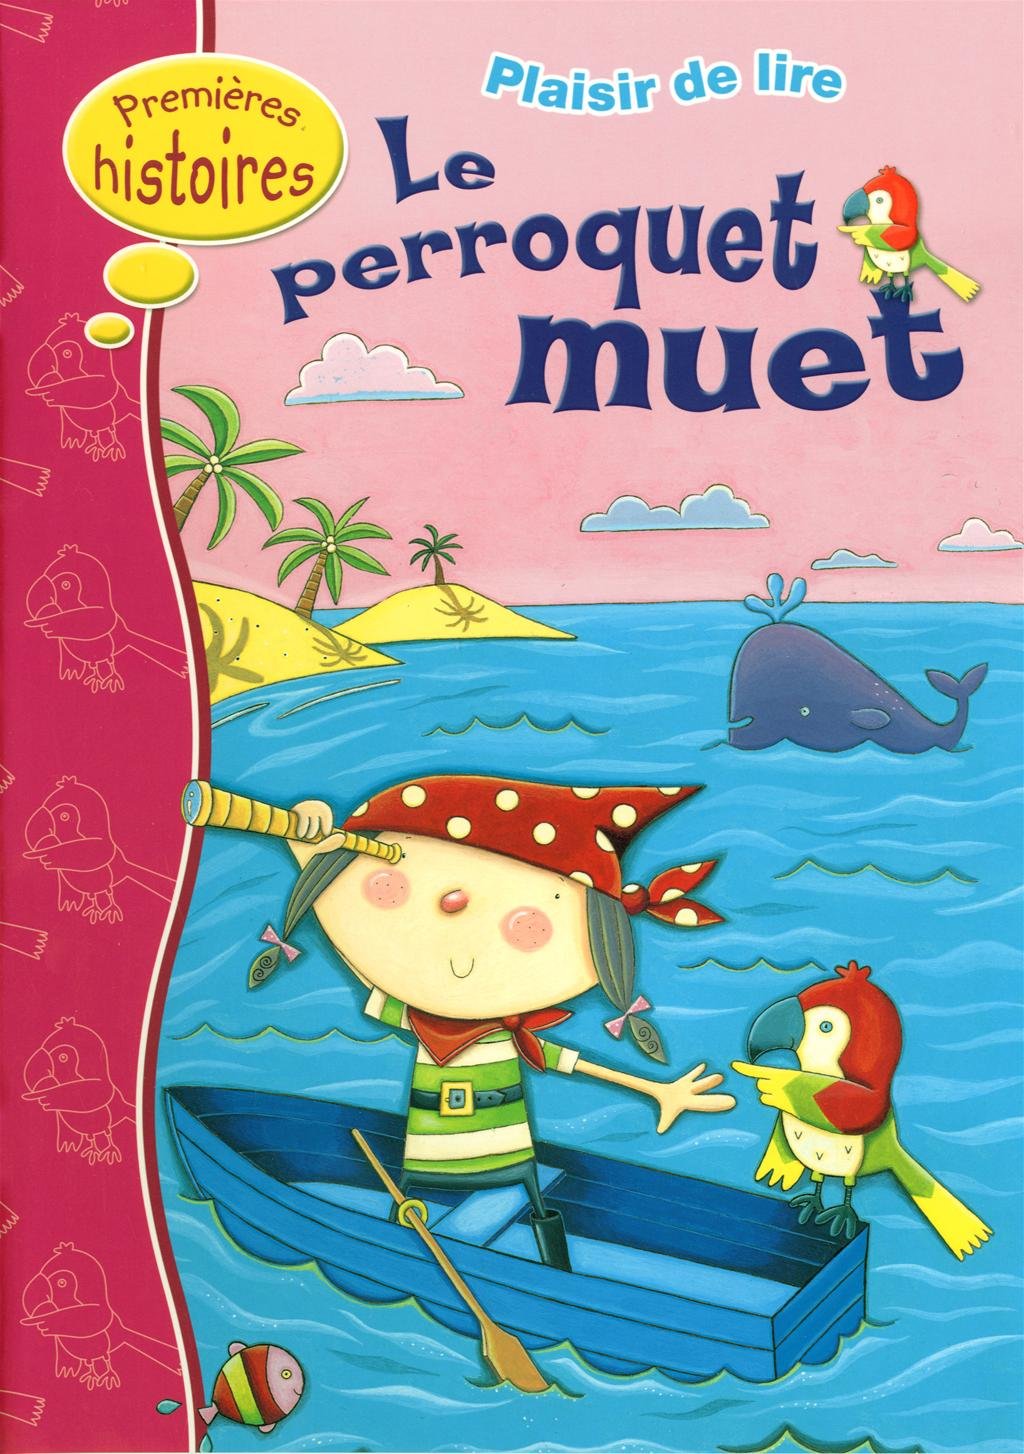 Livre ISBN 2762592798 Premières histoires (Plaisir de lire) : Le perroquet muet